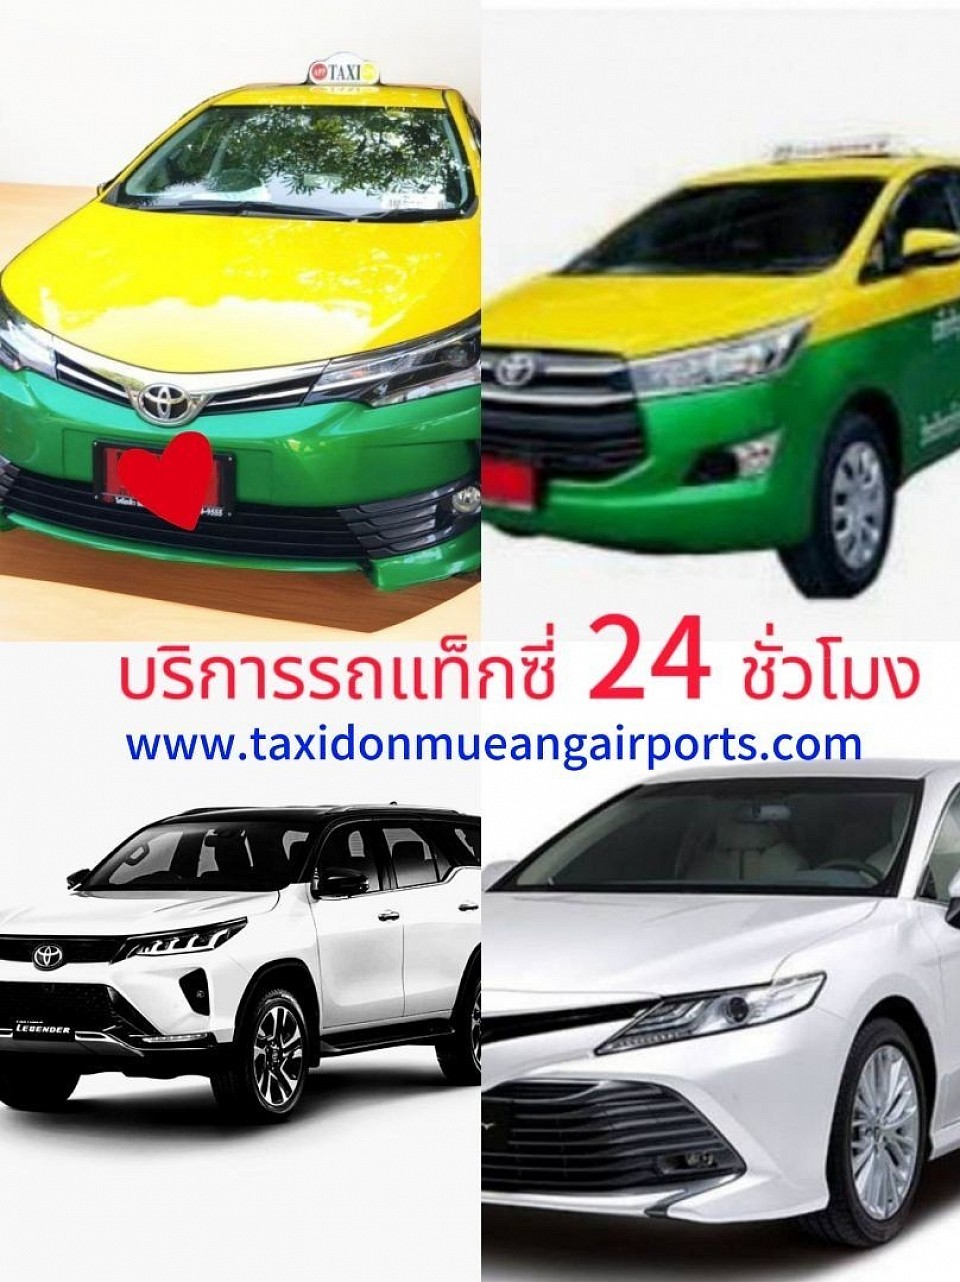 บริการรถแท็กซี่ดอนเมือง เรียกแท็กซี่ดอนเมือง จองแท็กซี่ดอนเมือง เบอร์โทรแท็กซี่ดอนเมือง รับส่งทุกจังหวัด ทั่วไทย 24 ชั่วโมง